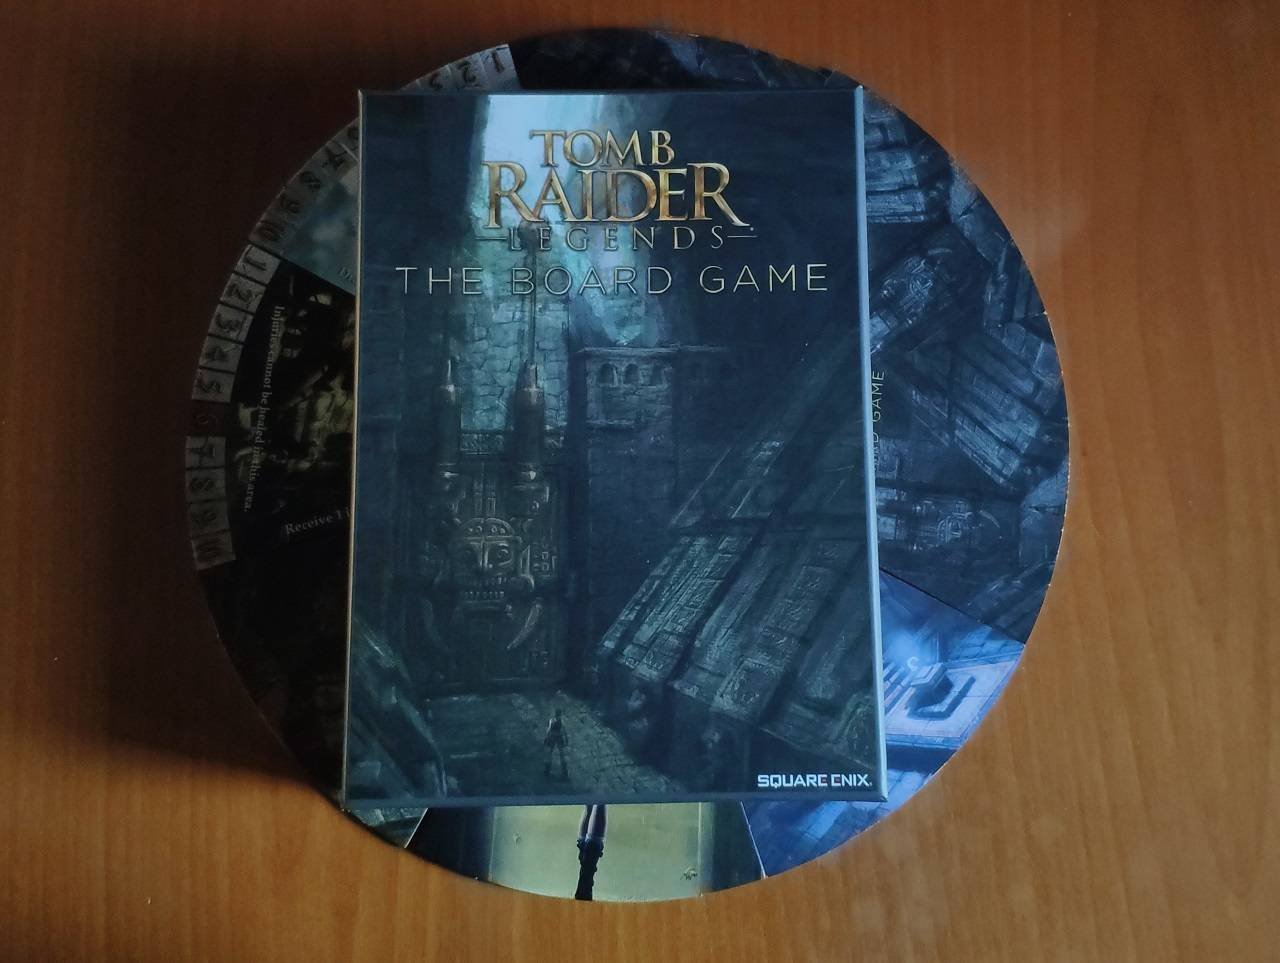 Immagine di Tomb Raider Legends: The Board Game, la recensione